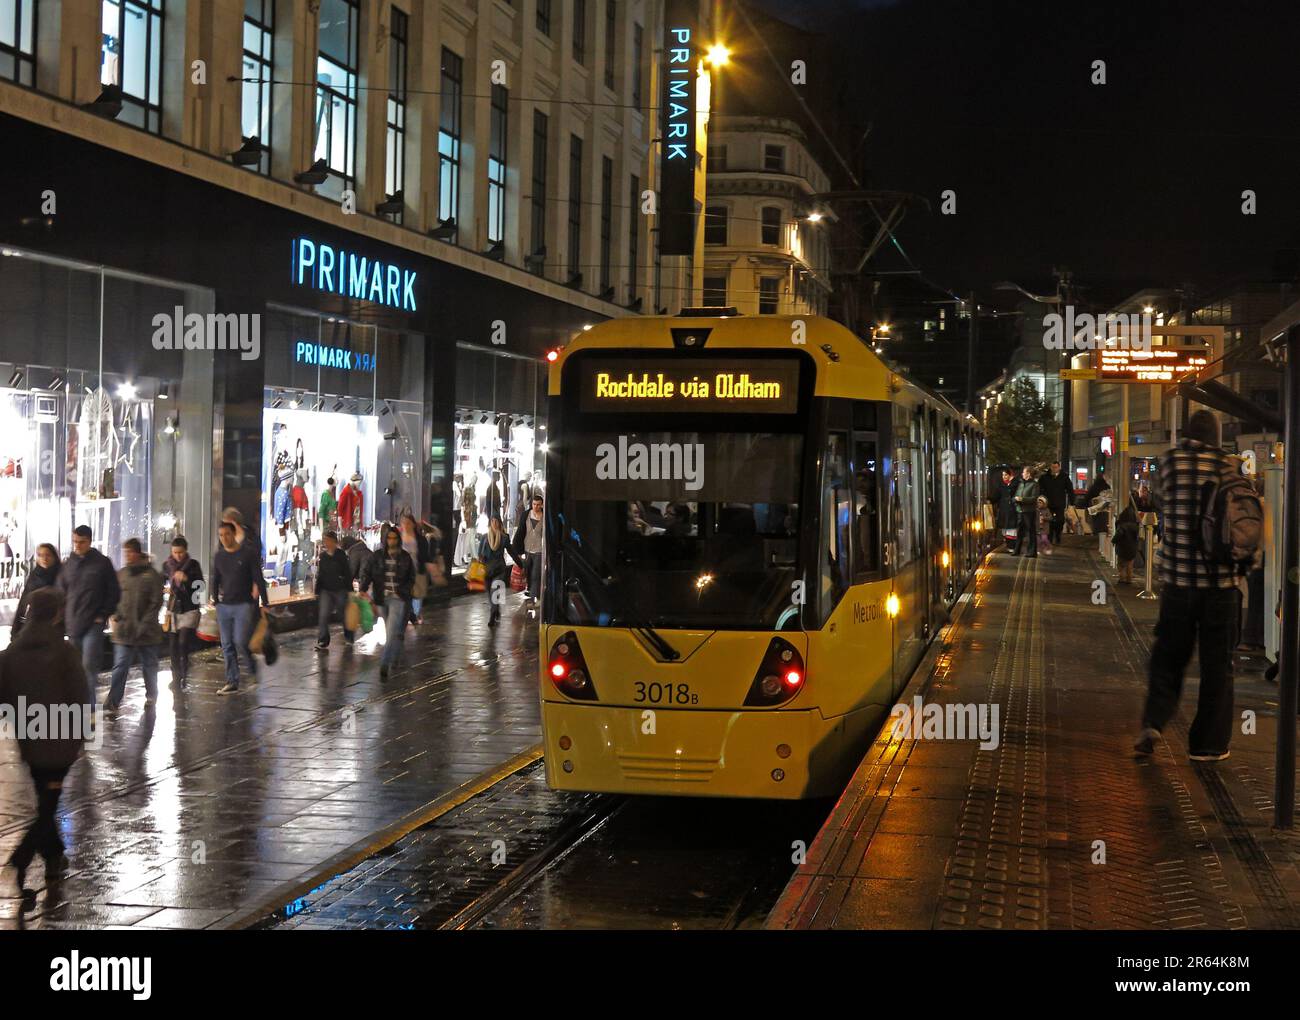 Metrolink Manchester tram Rochdale via Oldham, in una serata piovosa, in Market Street, vicino a Primark, Manchester, Lancashire, INGHILTERRA, REGNO UNITO, M1 1PW Foto Stock